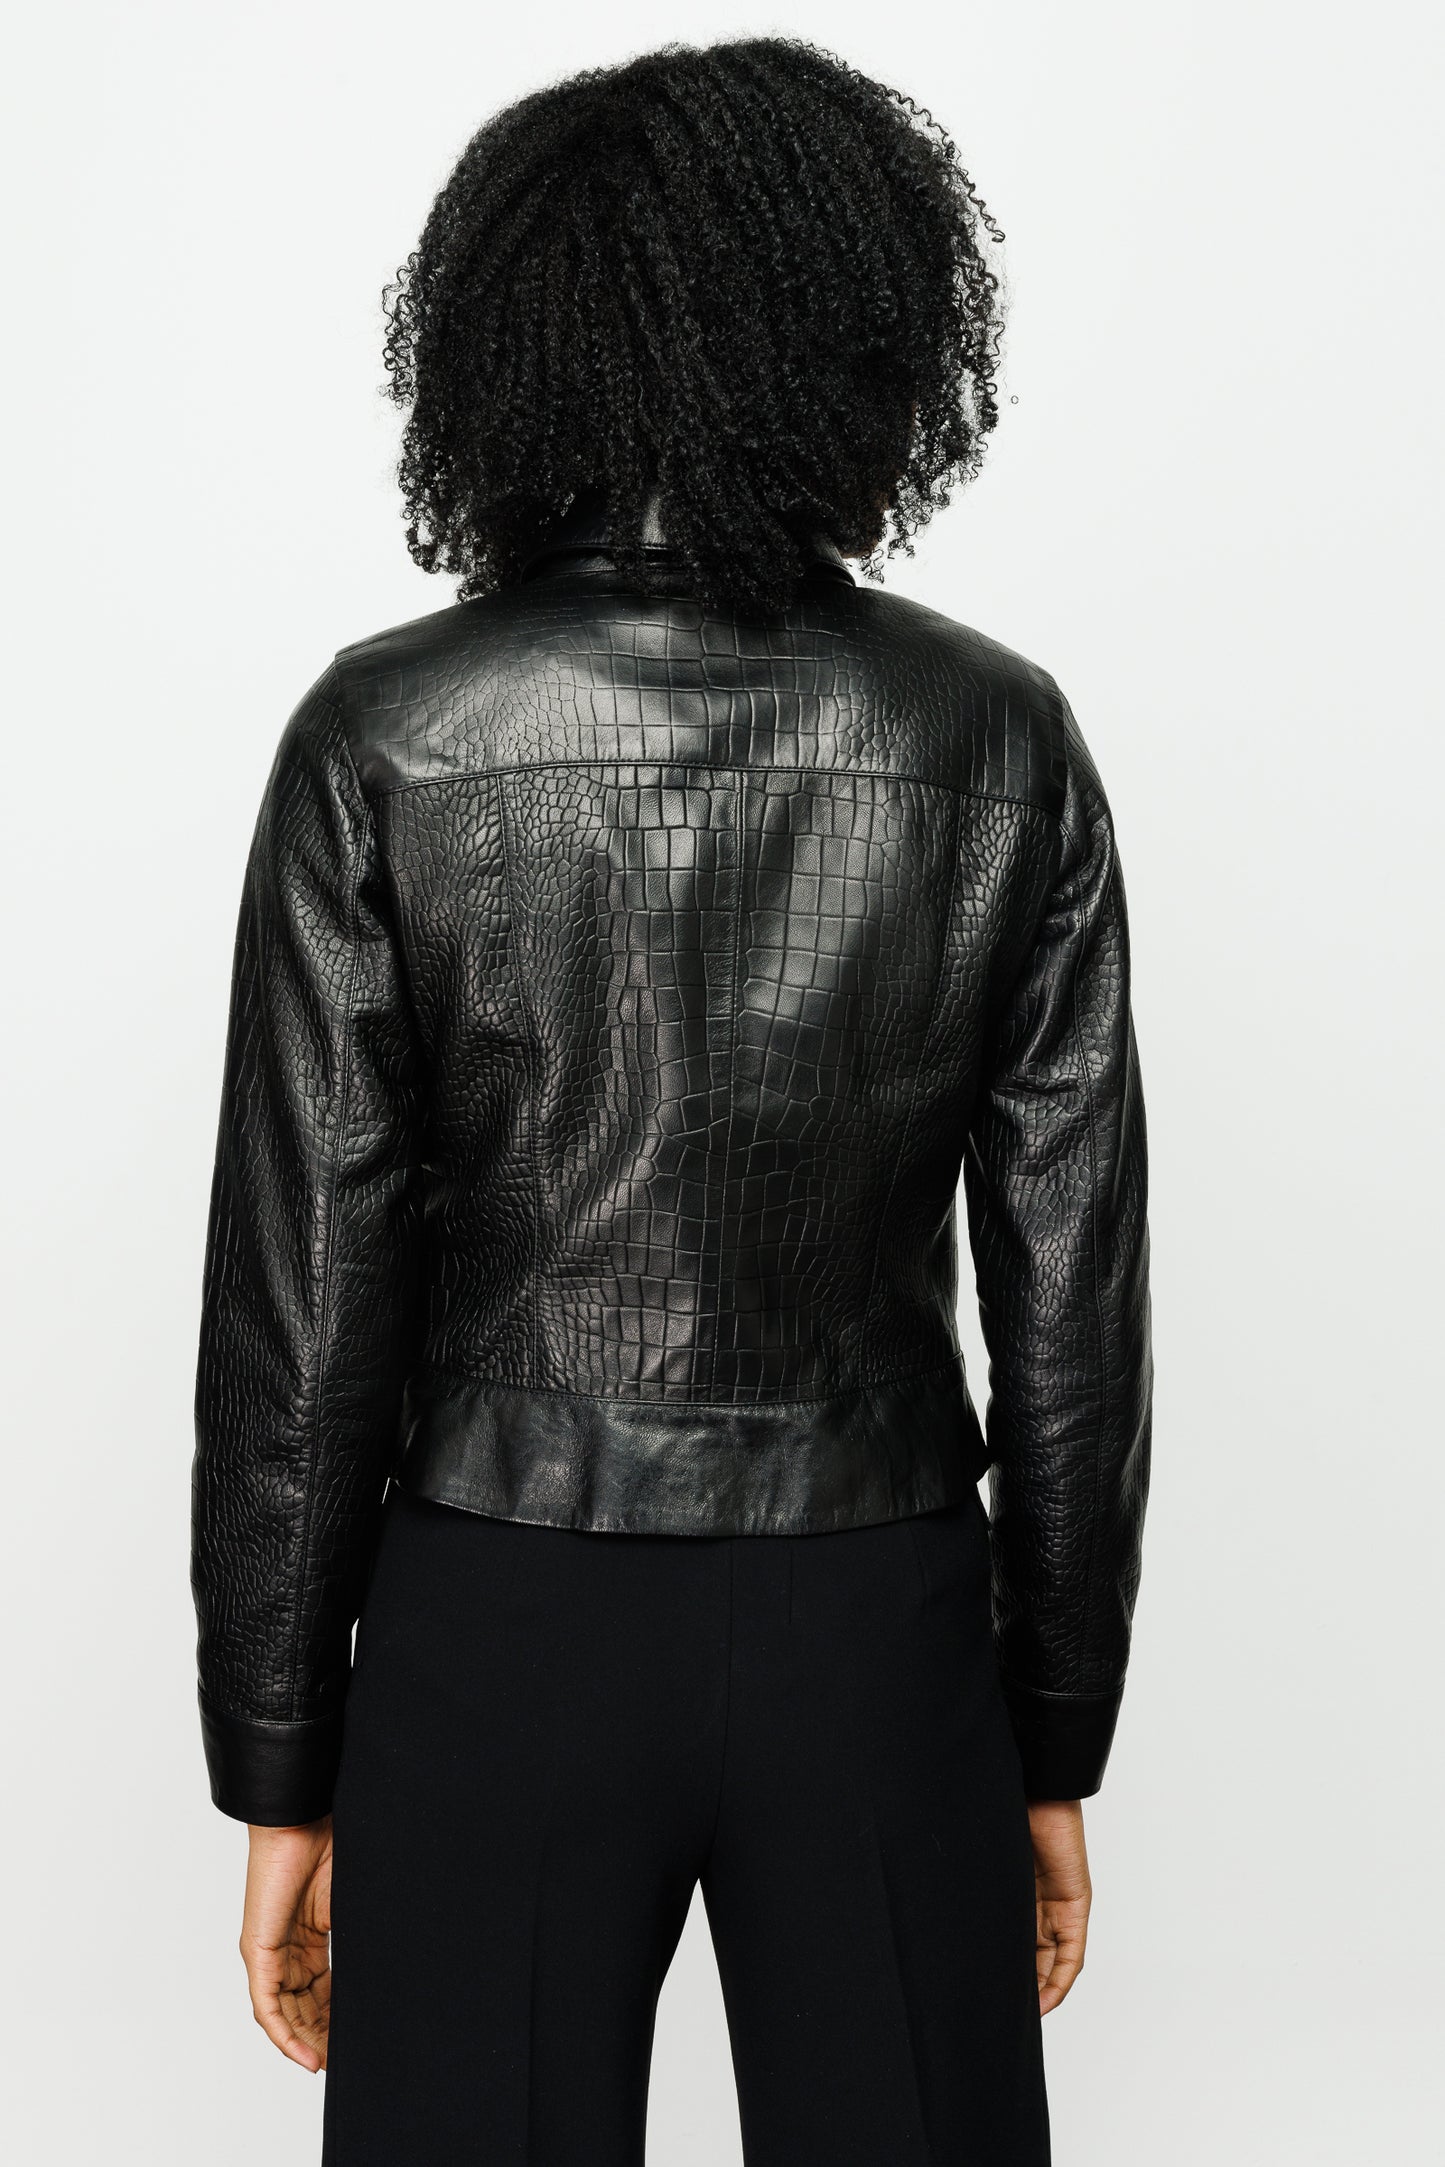 The Piane Black Leather Jacket